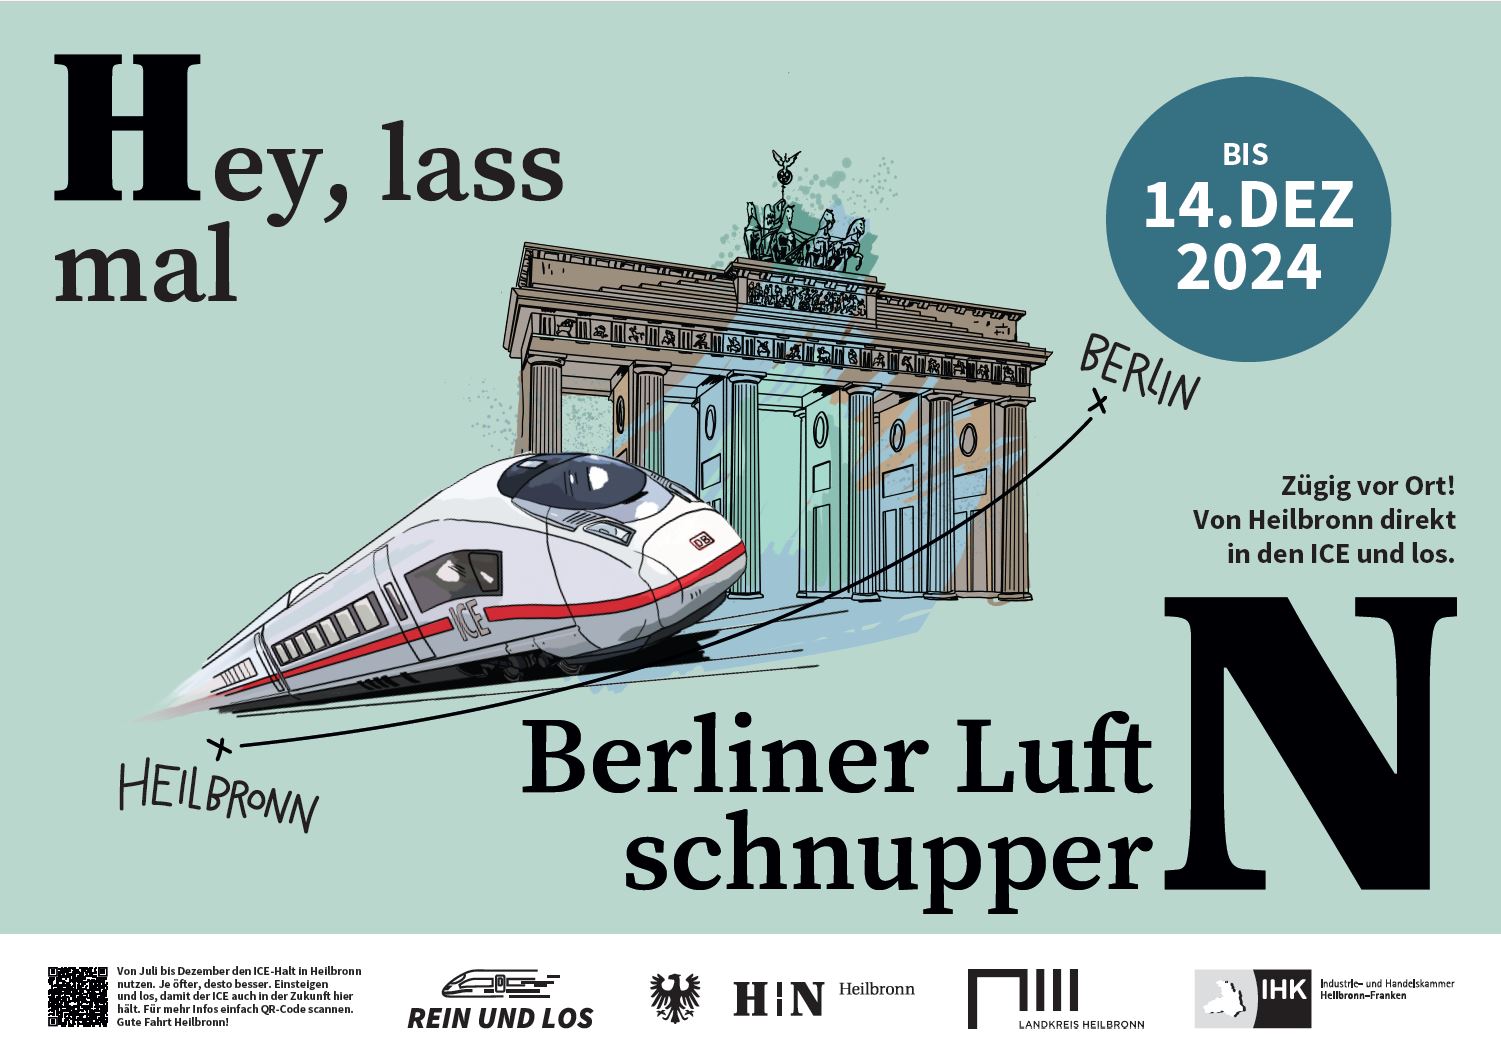 Kampagnenmotiv für die ICE-Verbindung Heilbronn nach Berlin.